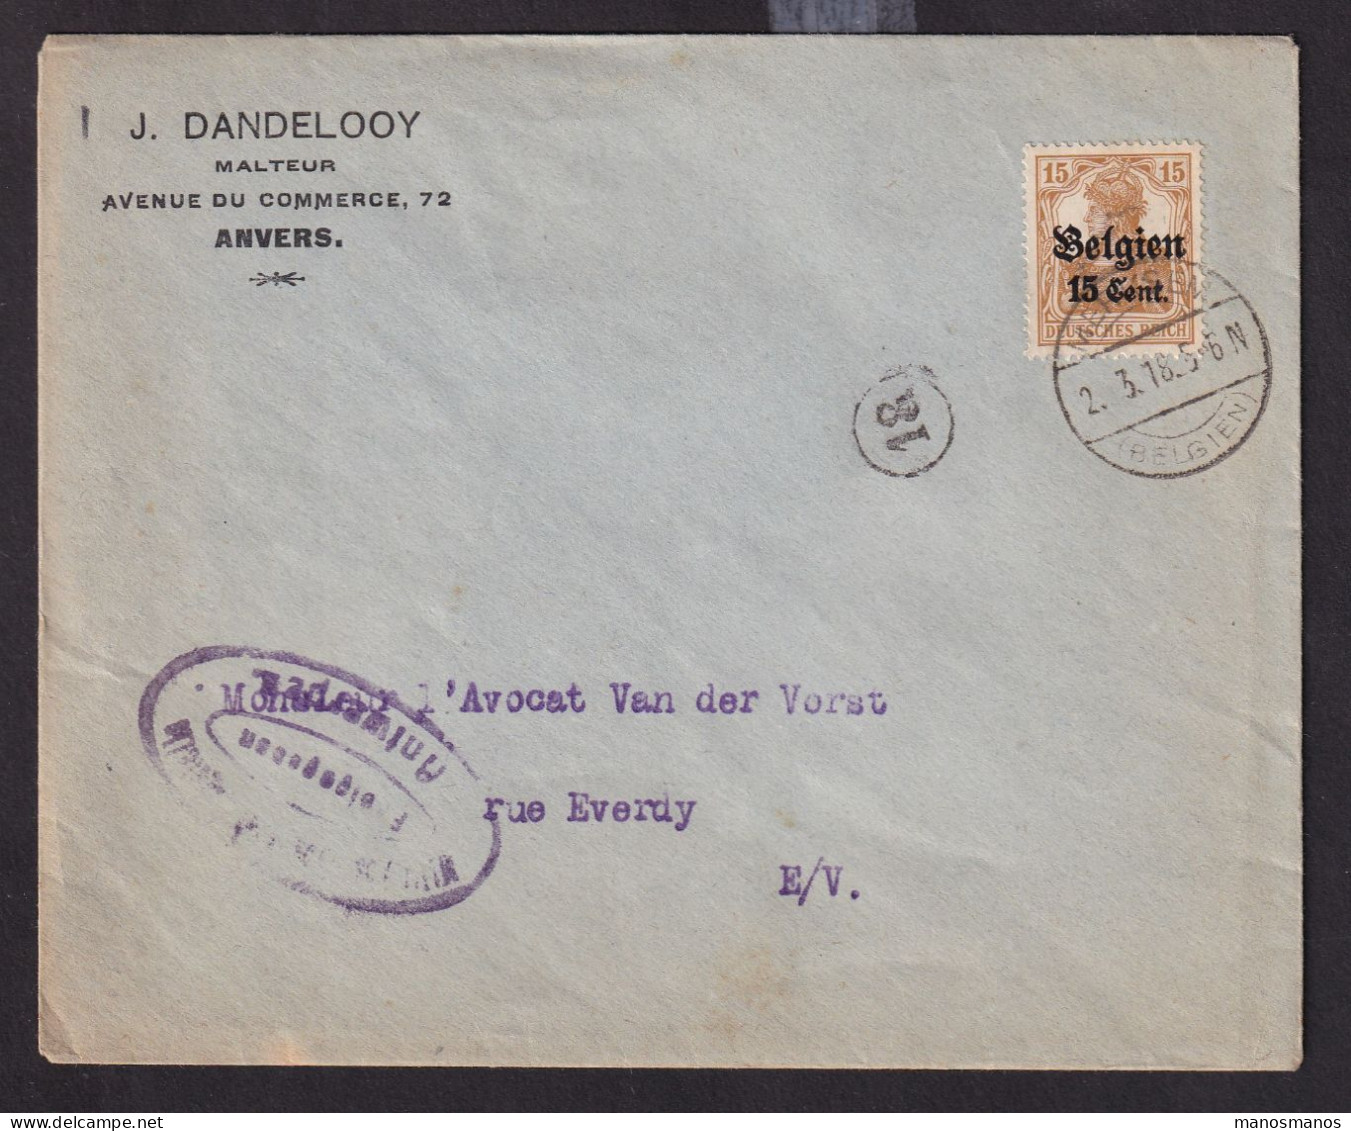 DDDD 823 -- MALTEUR - Enveloppe TP Germania MERKSEM 1918 - Censure Antwerpen - Entete Dandelooy , Malteur - Beers